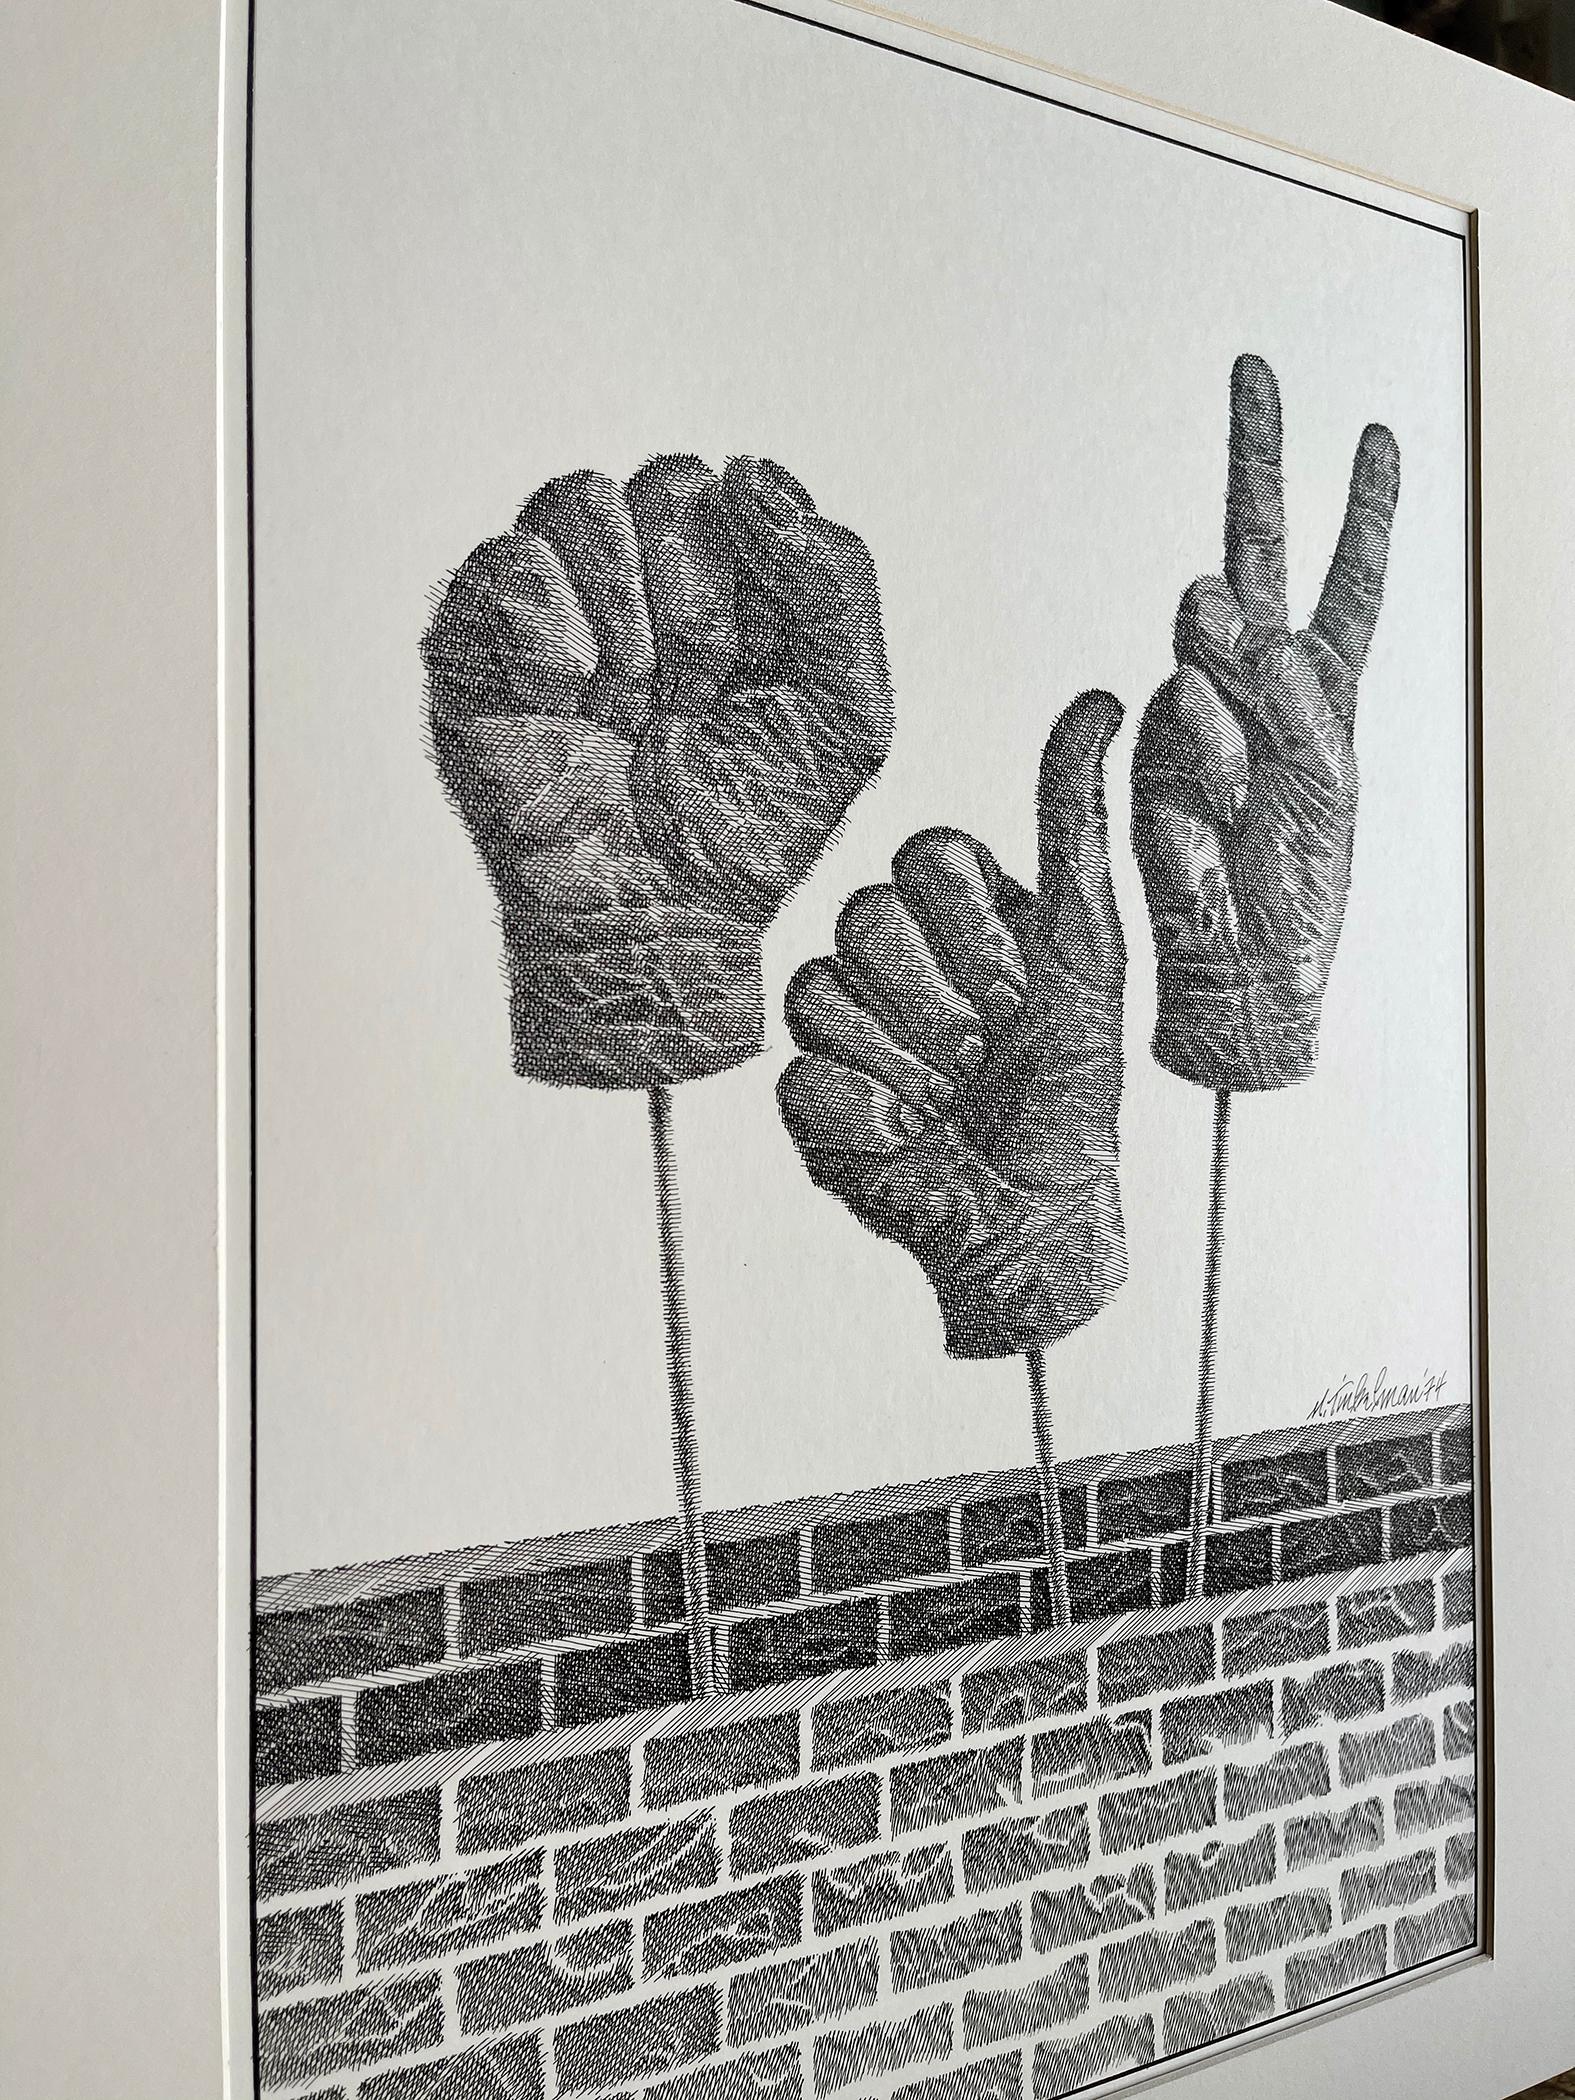 Schwarzes Power Fist, Thumbs Up, Friedensschild - Hand Signale – Art von Murray Tinkelman